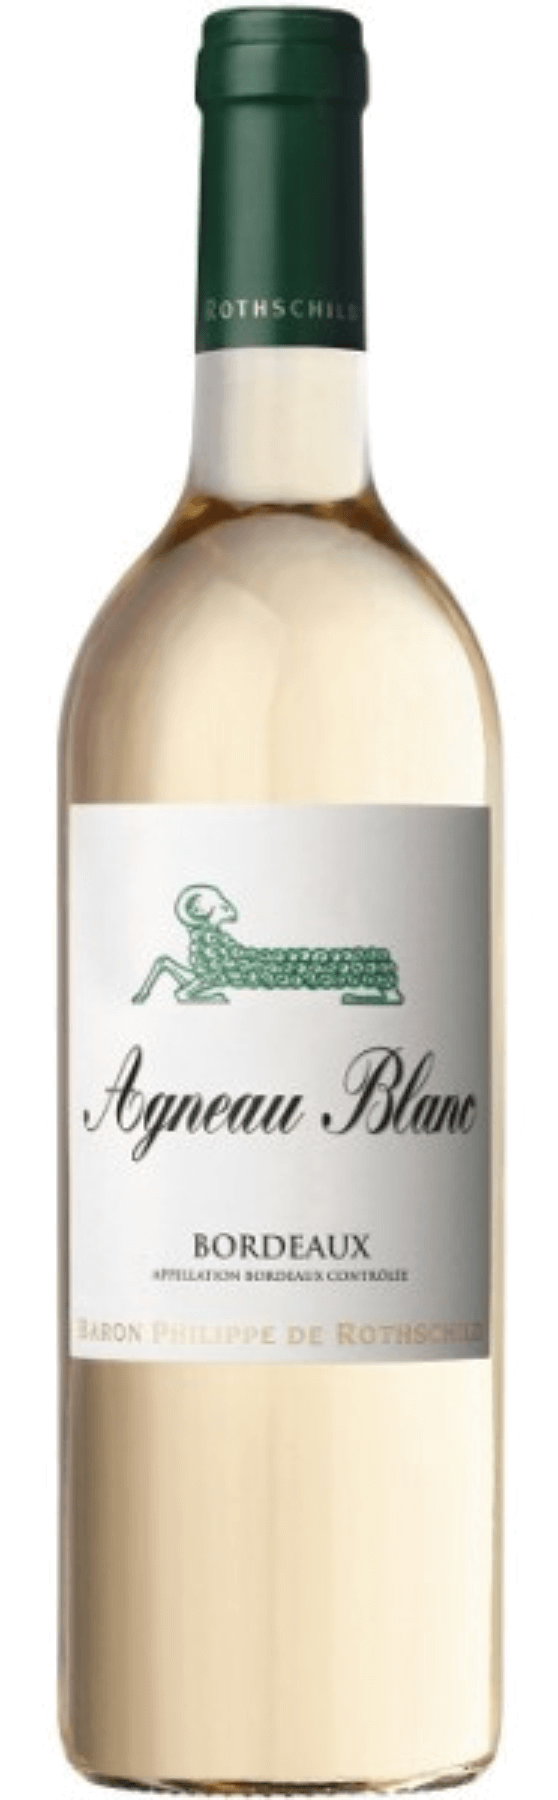 Agneau Blanc Bordeaux